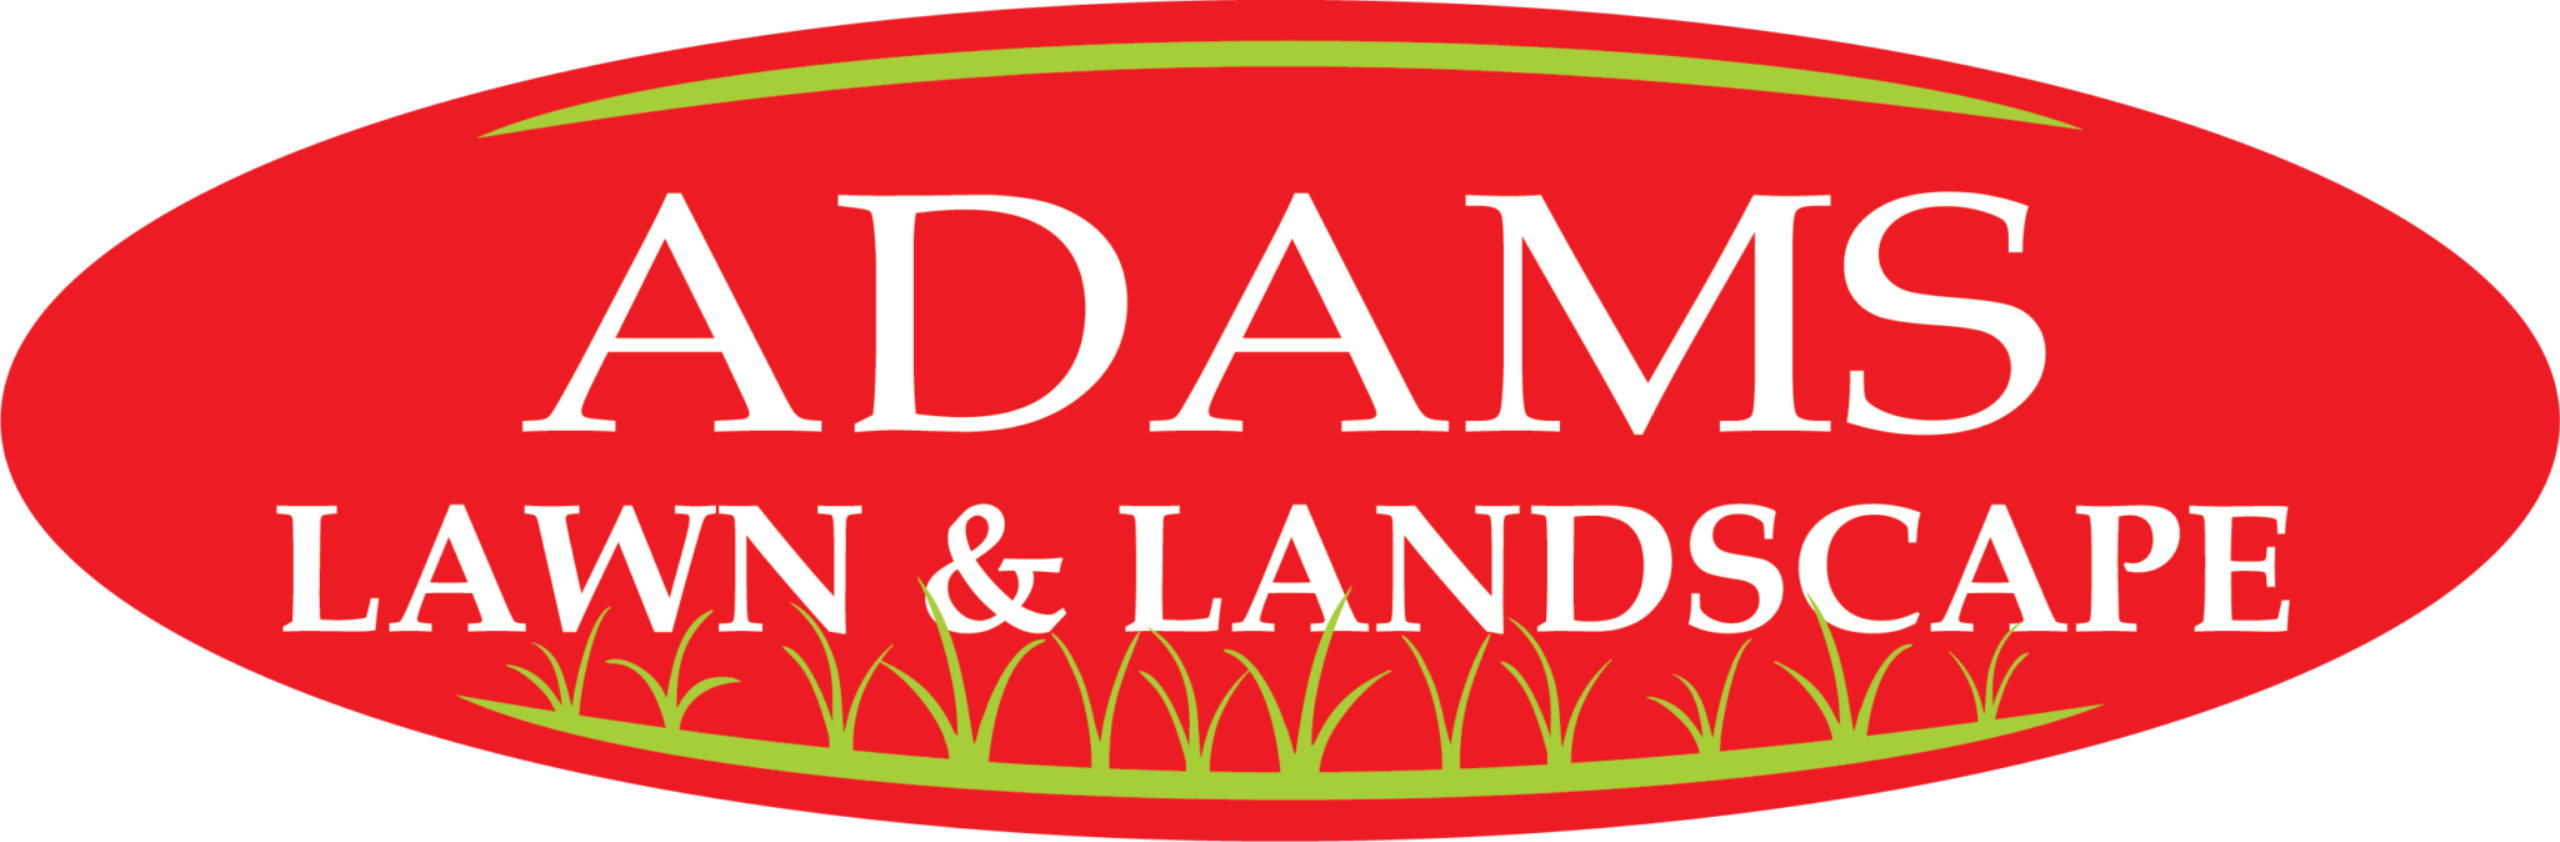 Adams Lawn & Landscape LLC Logo